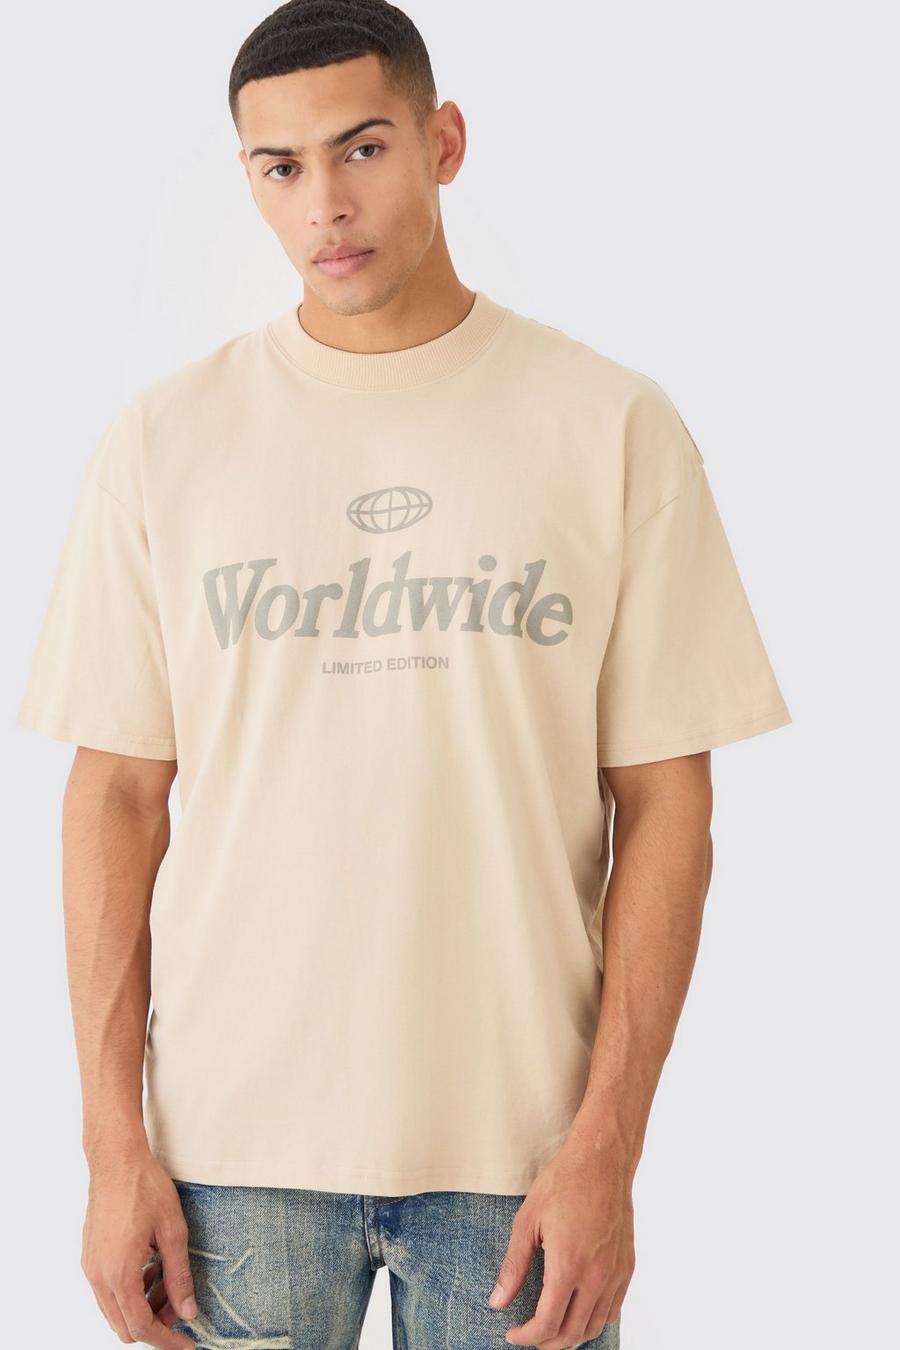 Sand Oversized Worldwide T-shirt image number 1